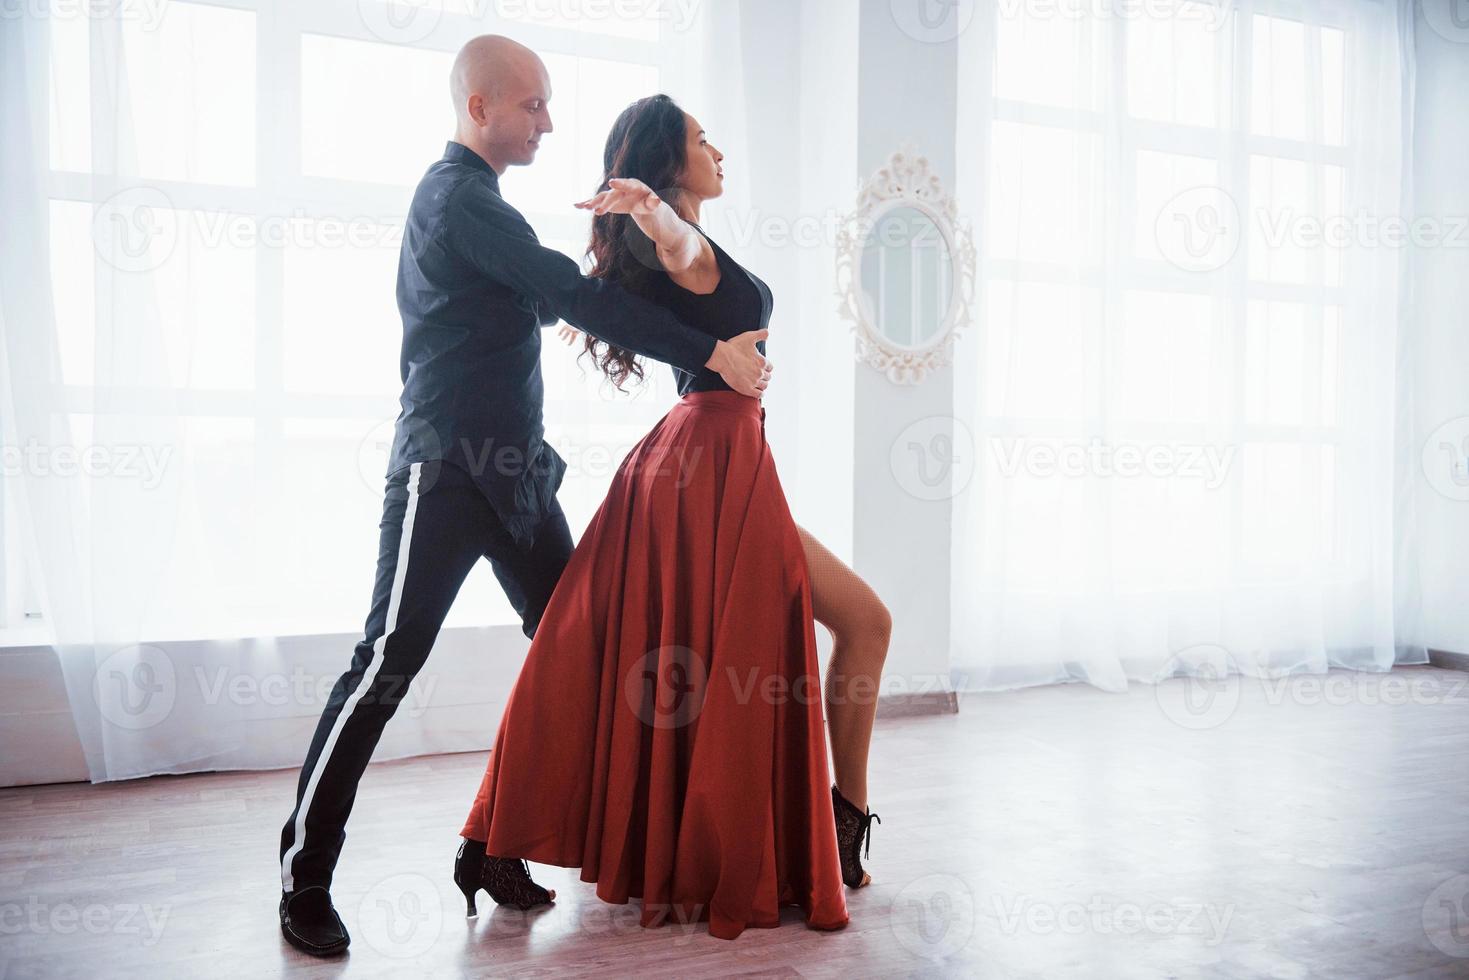 grande performance professionnelle. Jeune jolie femme en vêtements rouges et noirs dansant avec un homme chauve dans la salle blanche photo